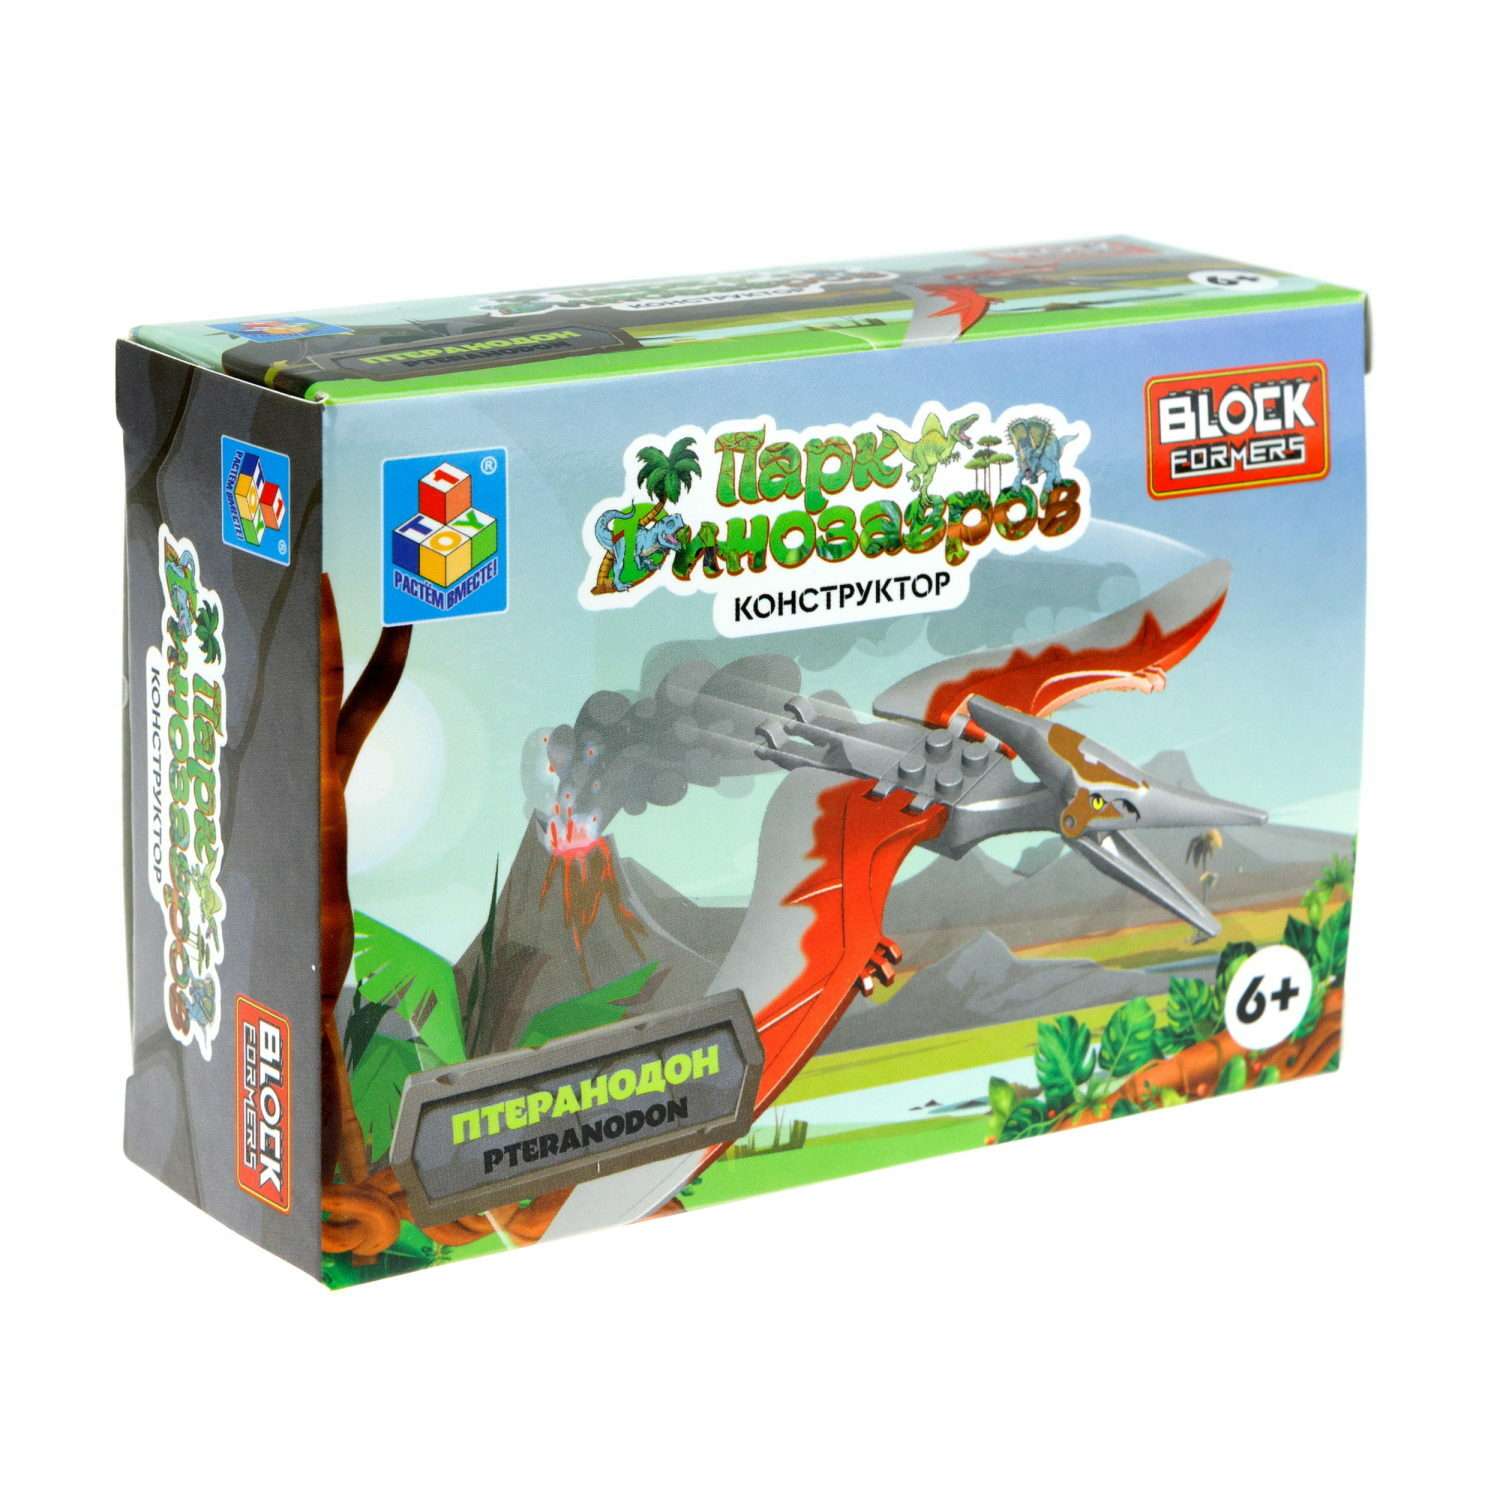 Игрушка сборная Blockformers 1Toy Парк динозавров Птеранодон Т23229-8 - фото 5